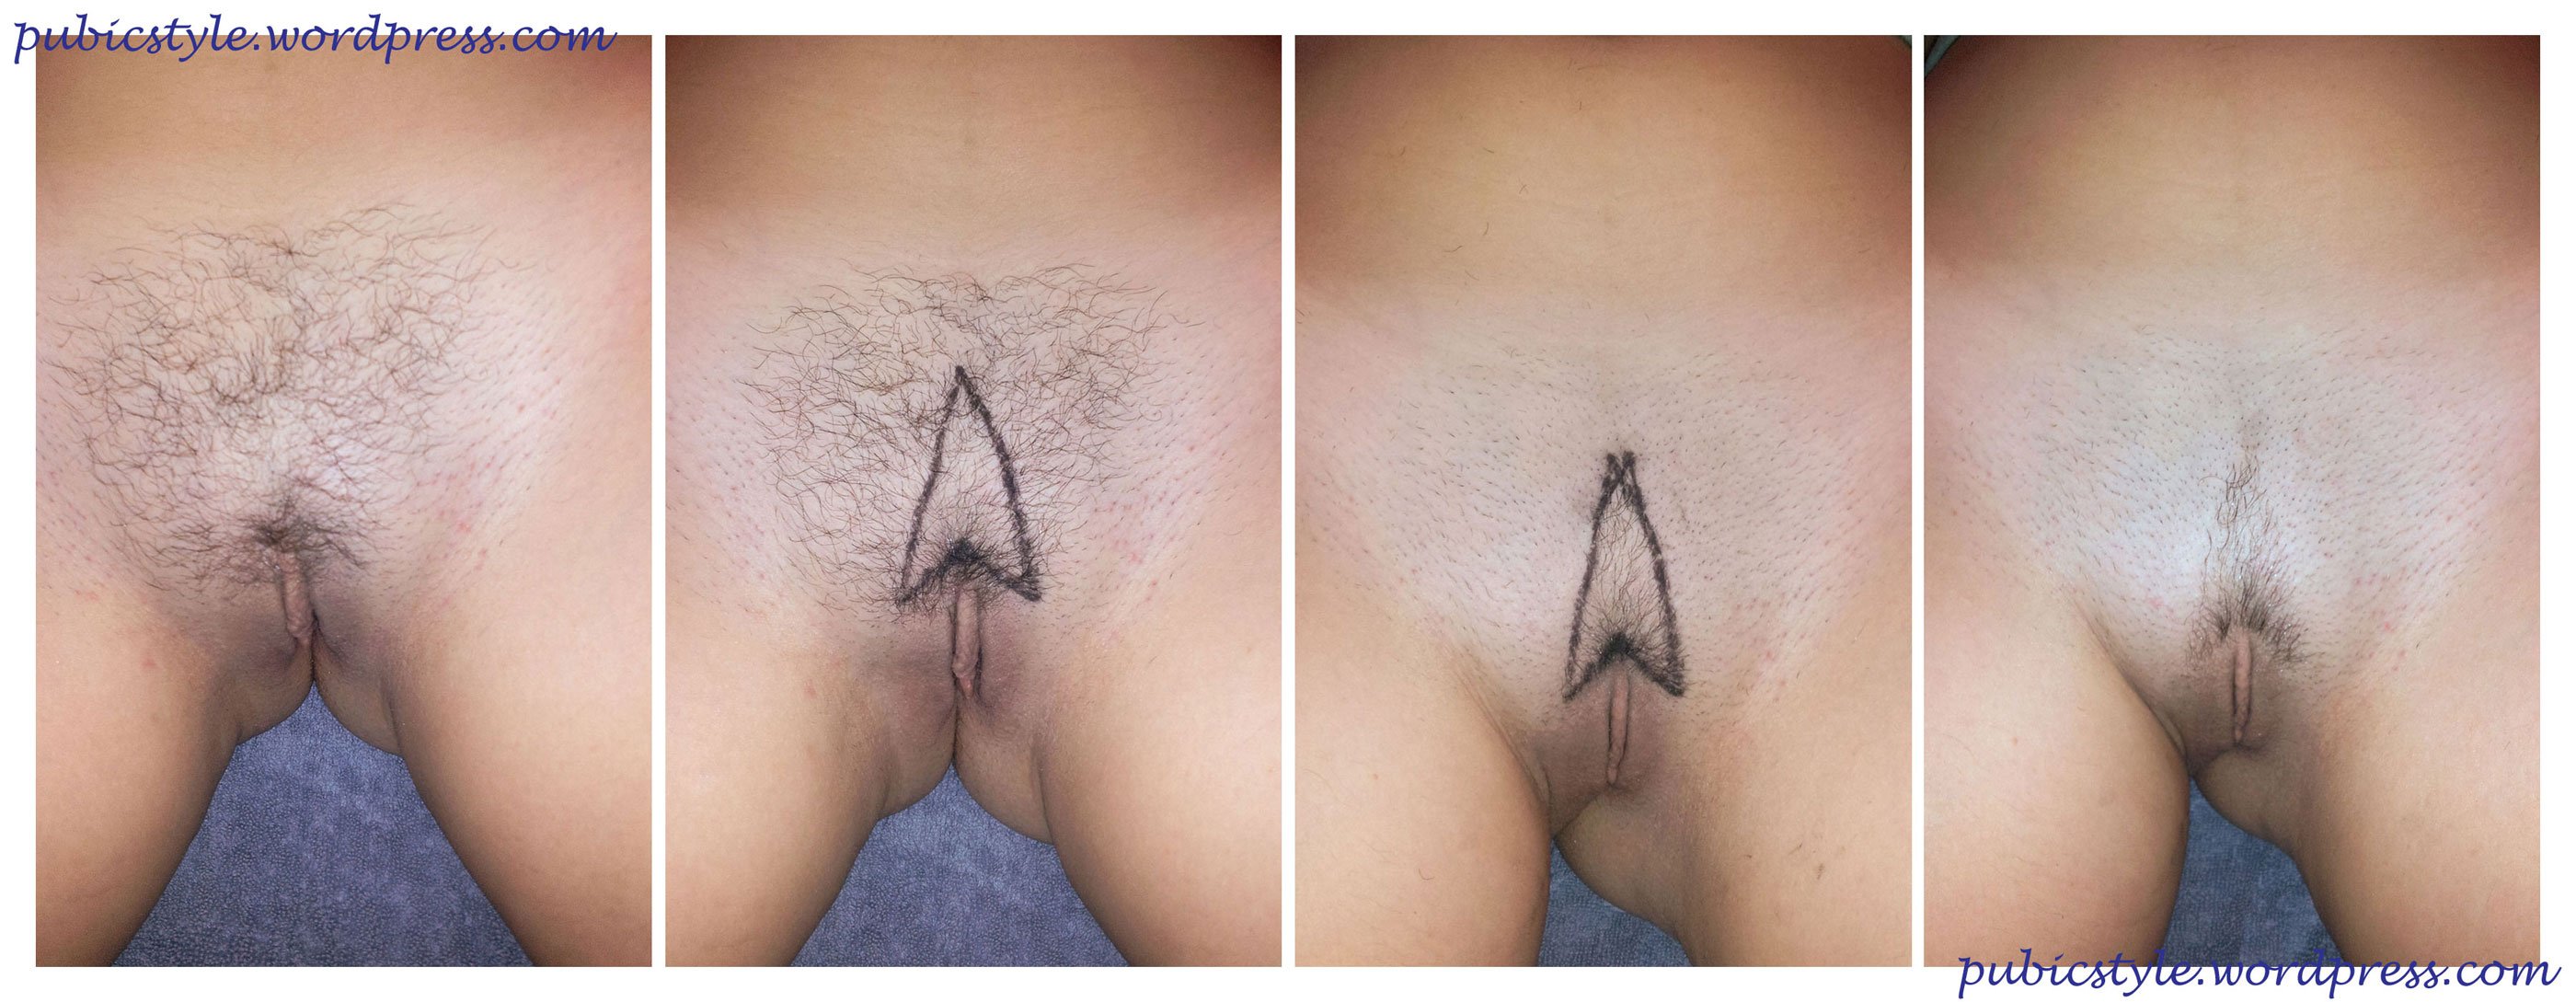 Вызывающая стрижка на вагине - секс фото 